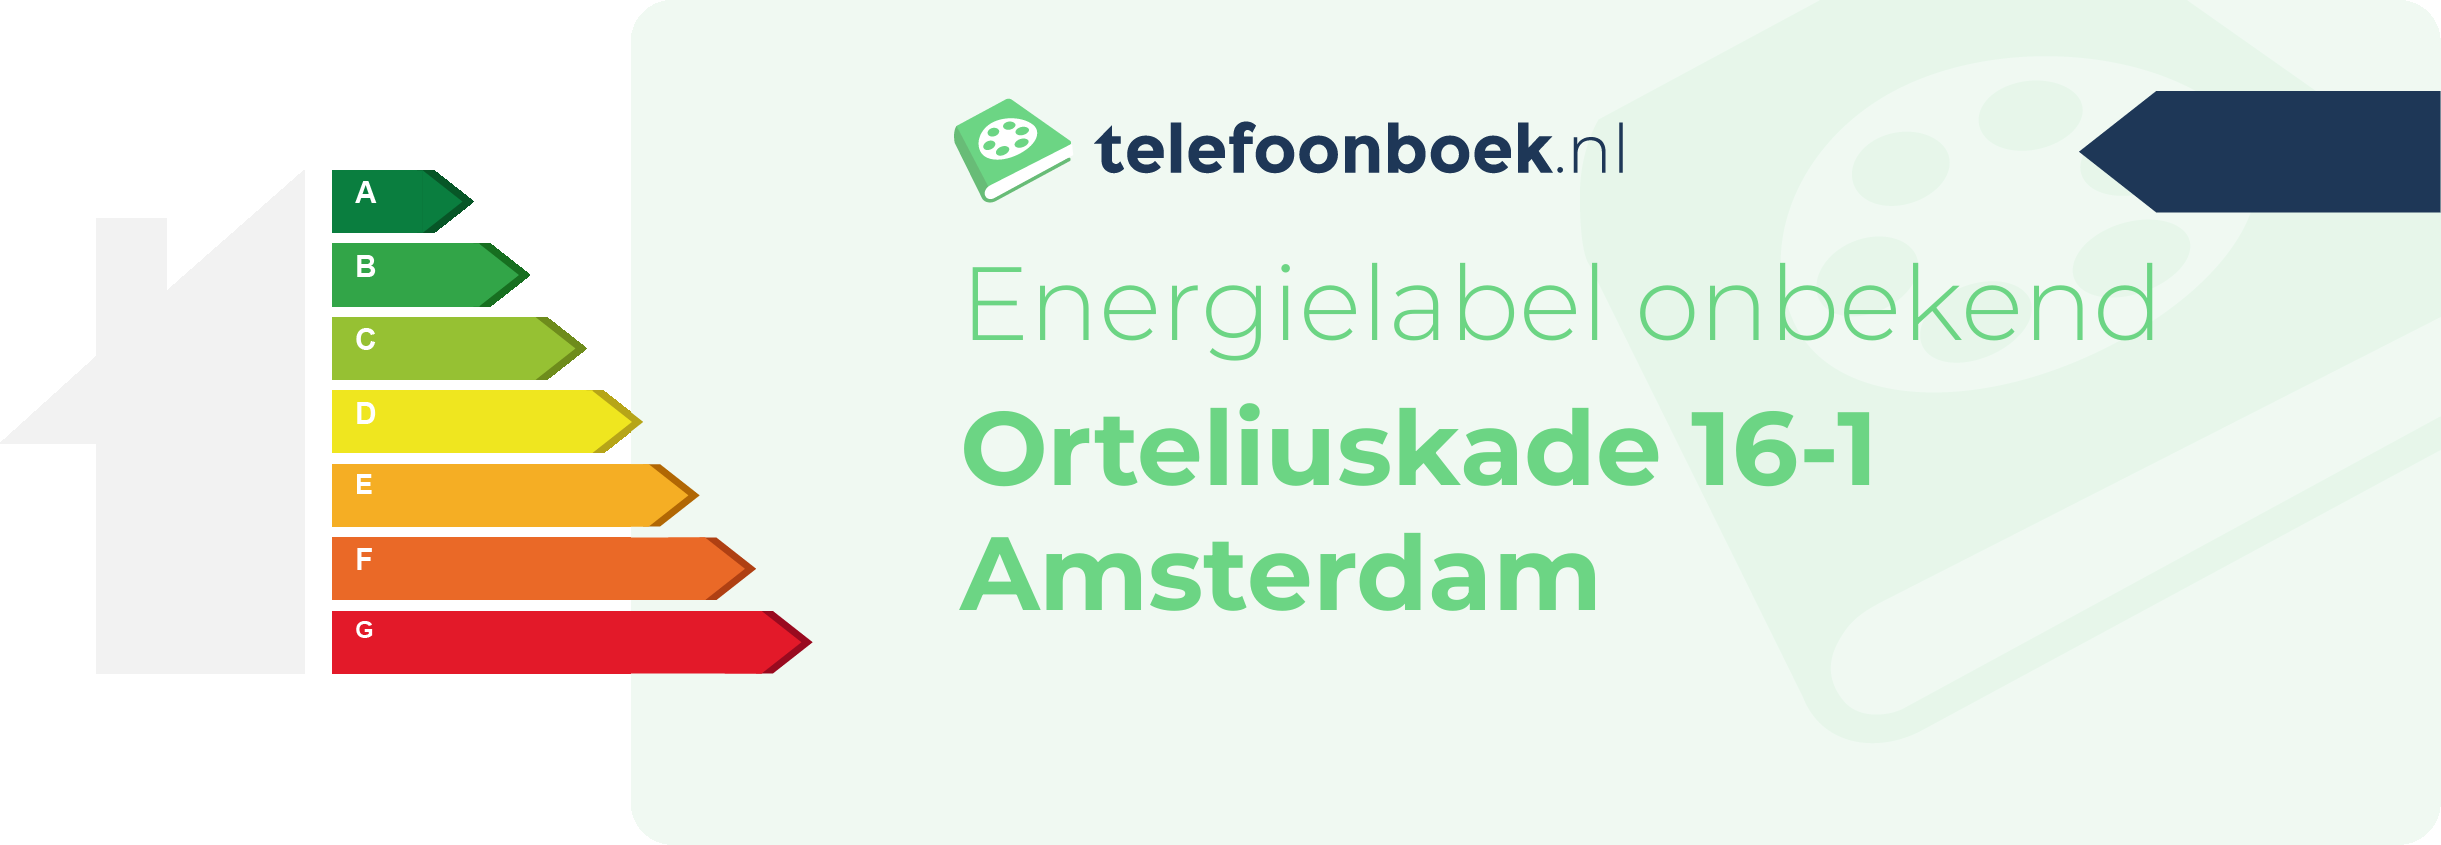 Energielabel Orteliuskade 16-1 Amsterdam